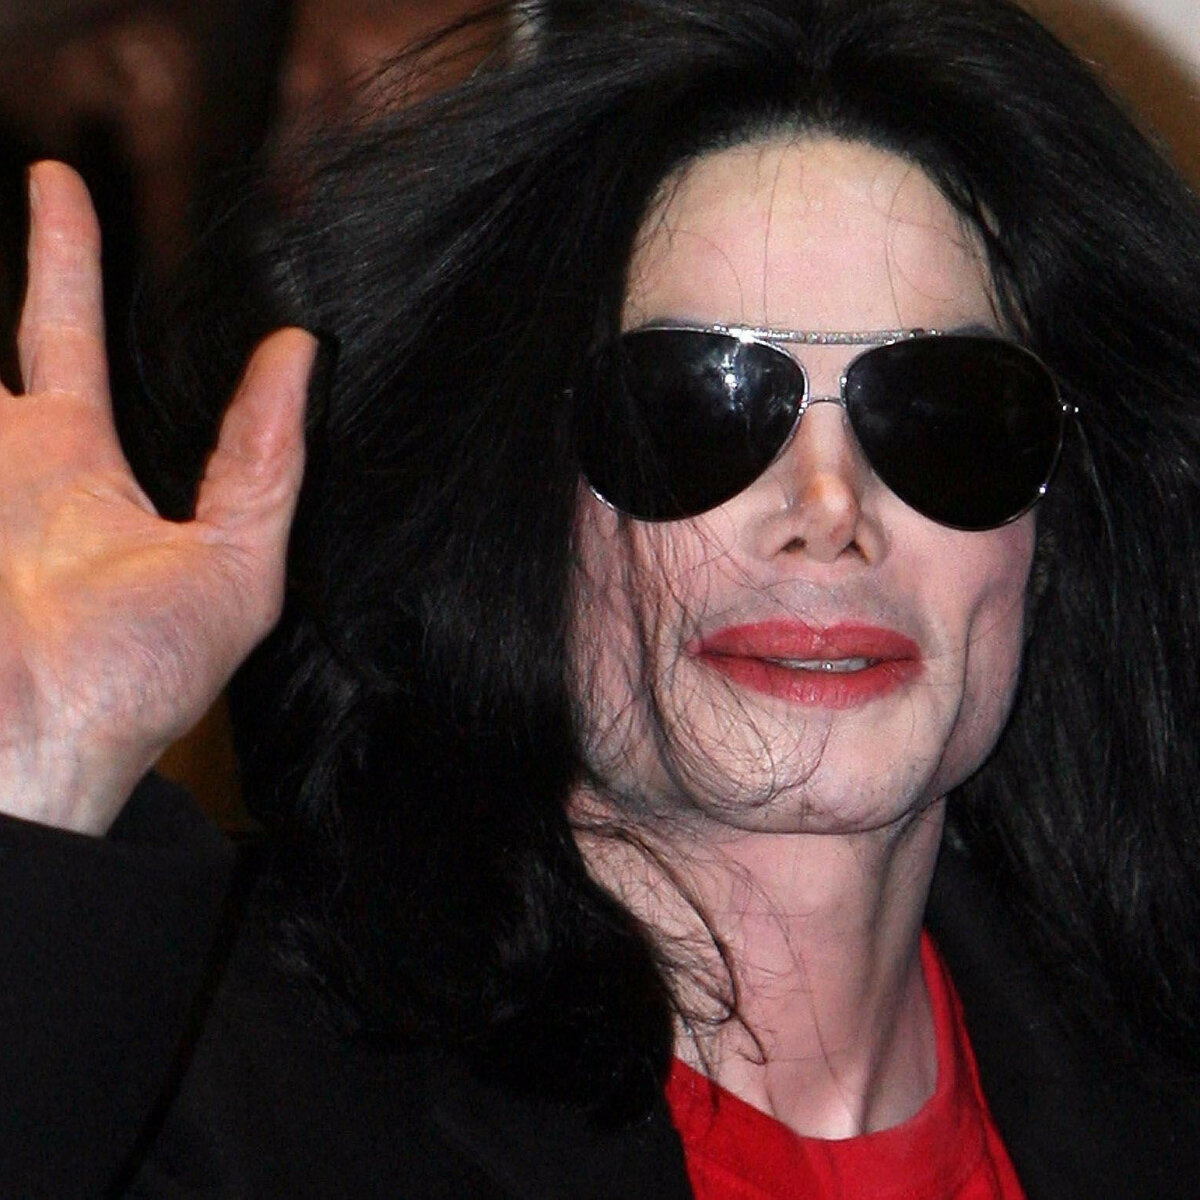 Майкл Джексон носил парик с конца х? - 53 ответа на форуме hb-crm.ru ()